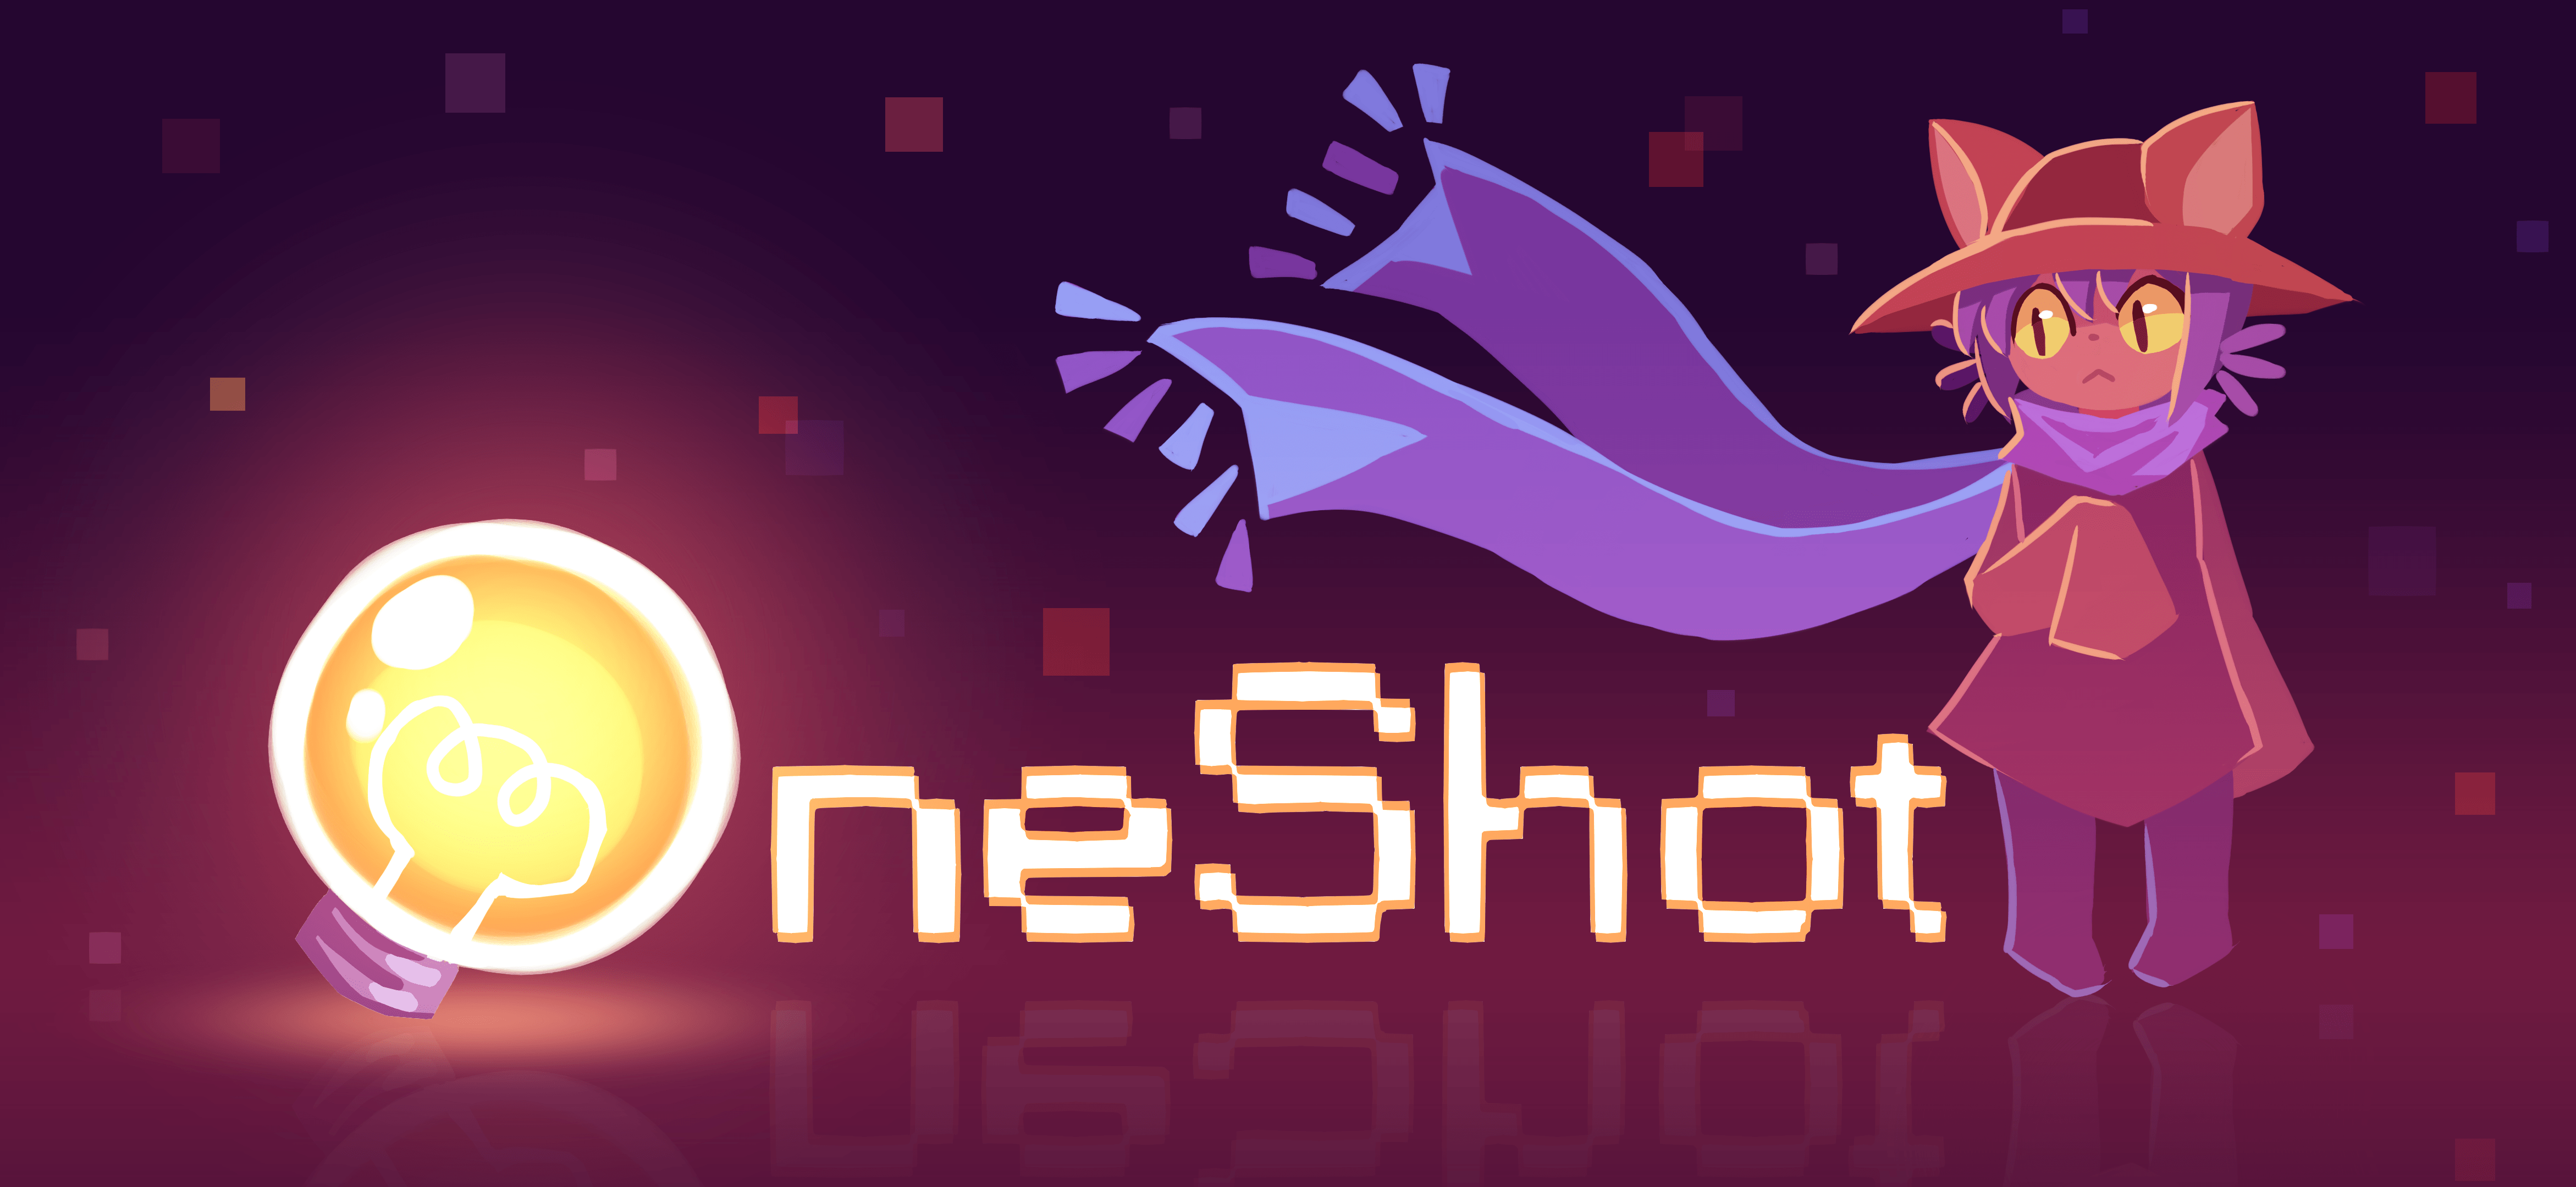 OneShot on Steam